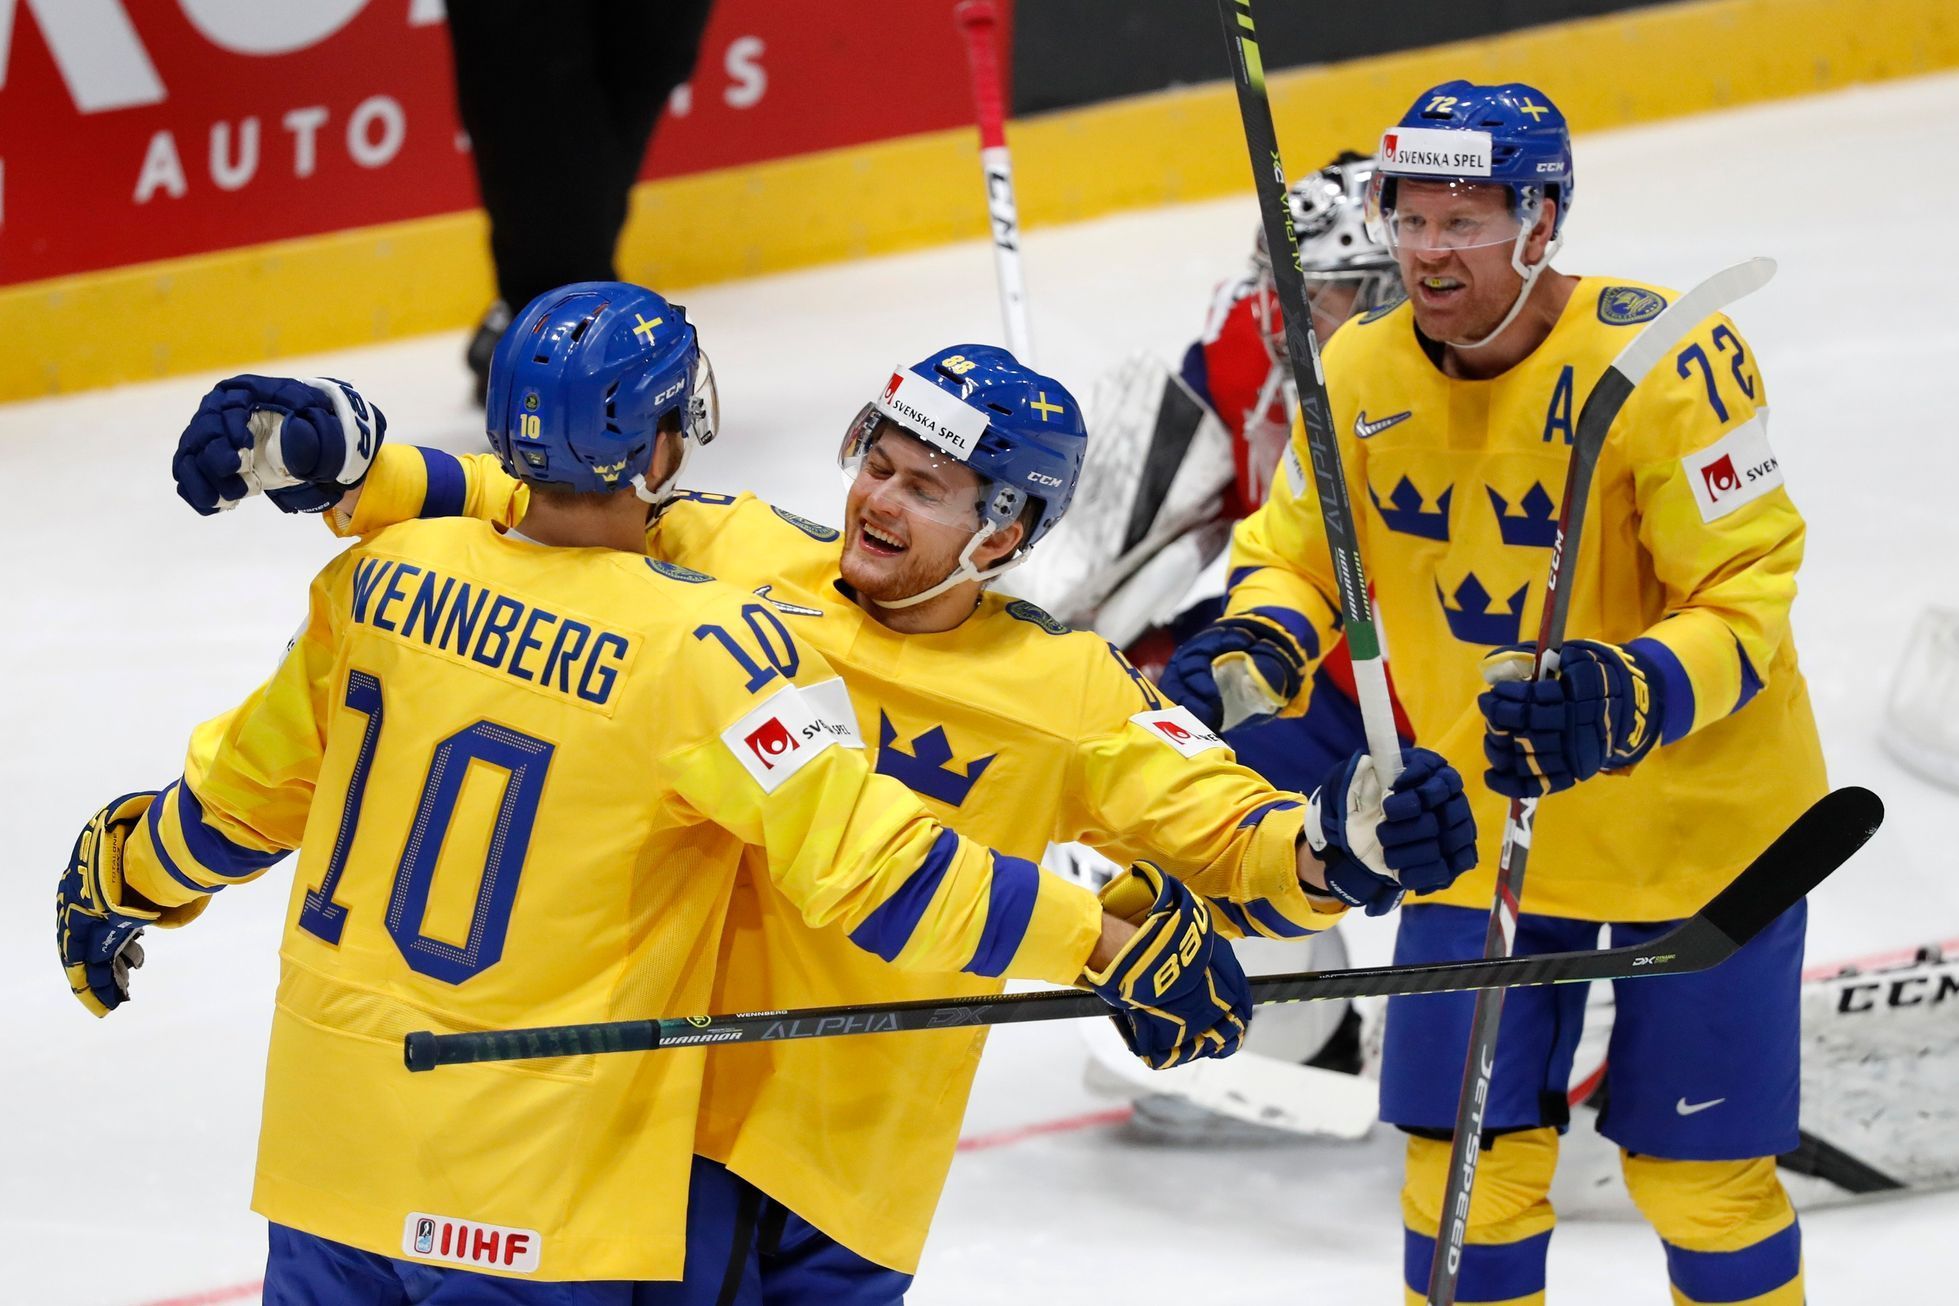 Alexander Wennberg slaví gól v zápase Švédsko - Norsko na MS 2019